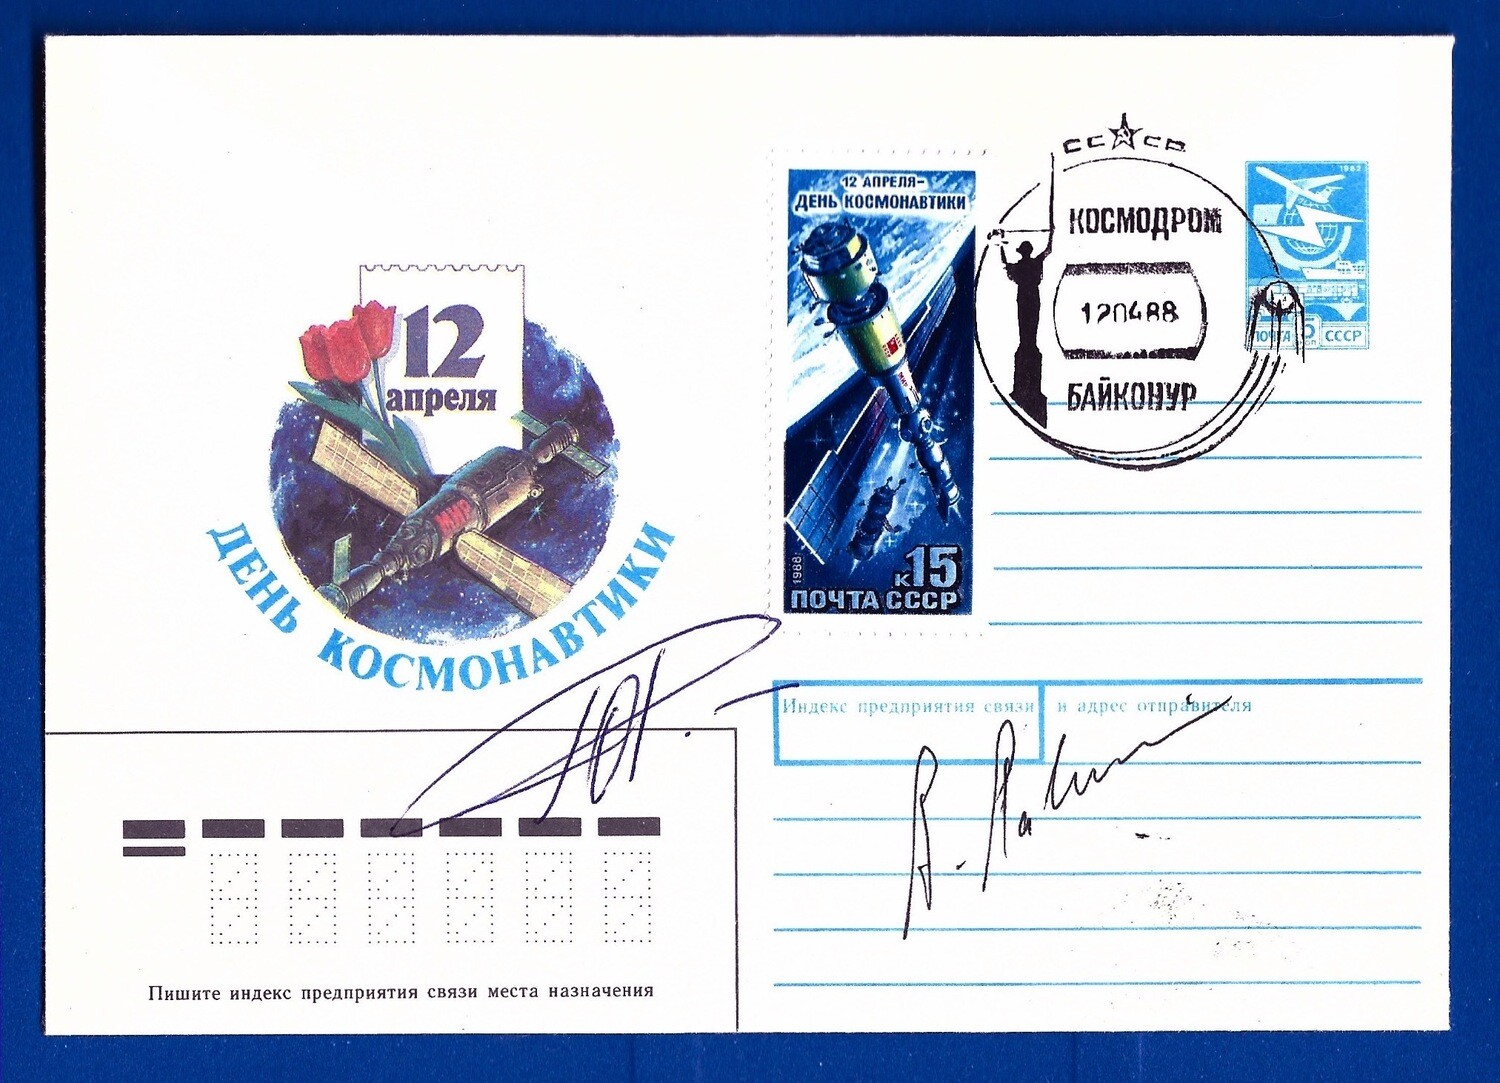 1987 Soyuz TM-2 signed cover